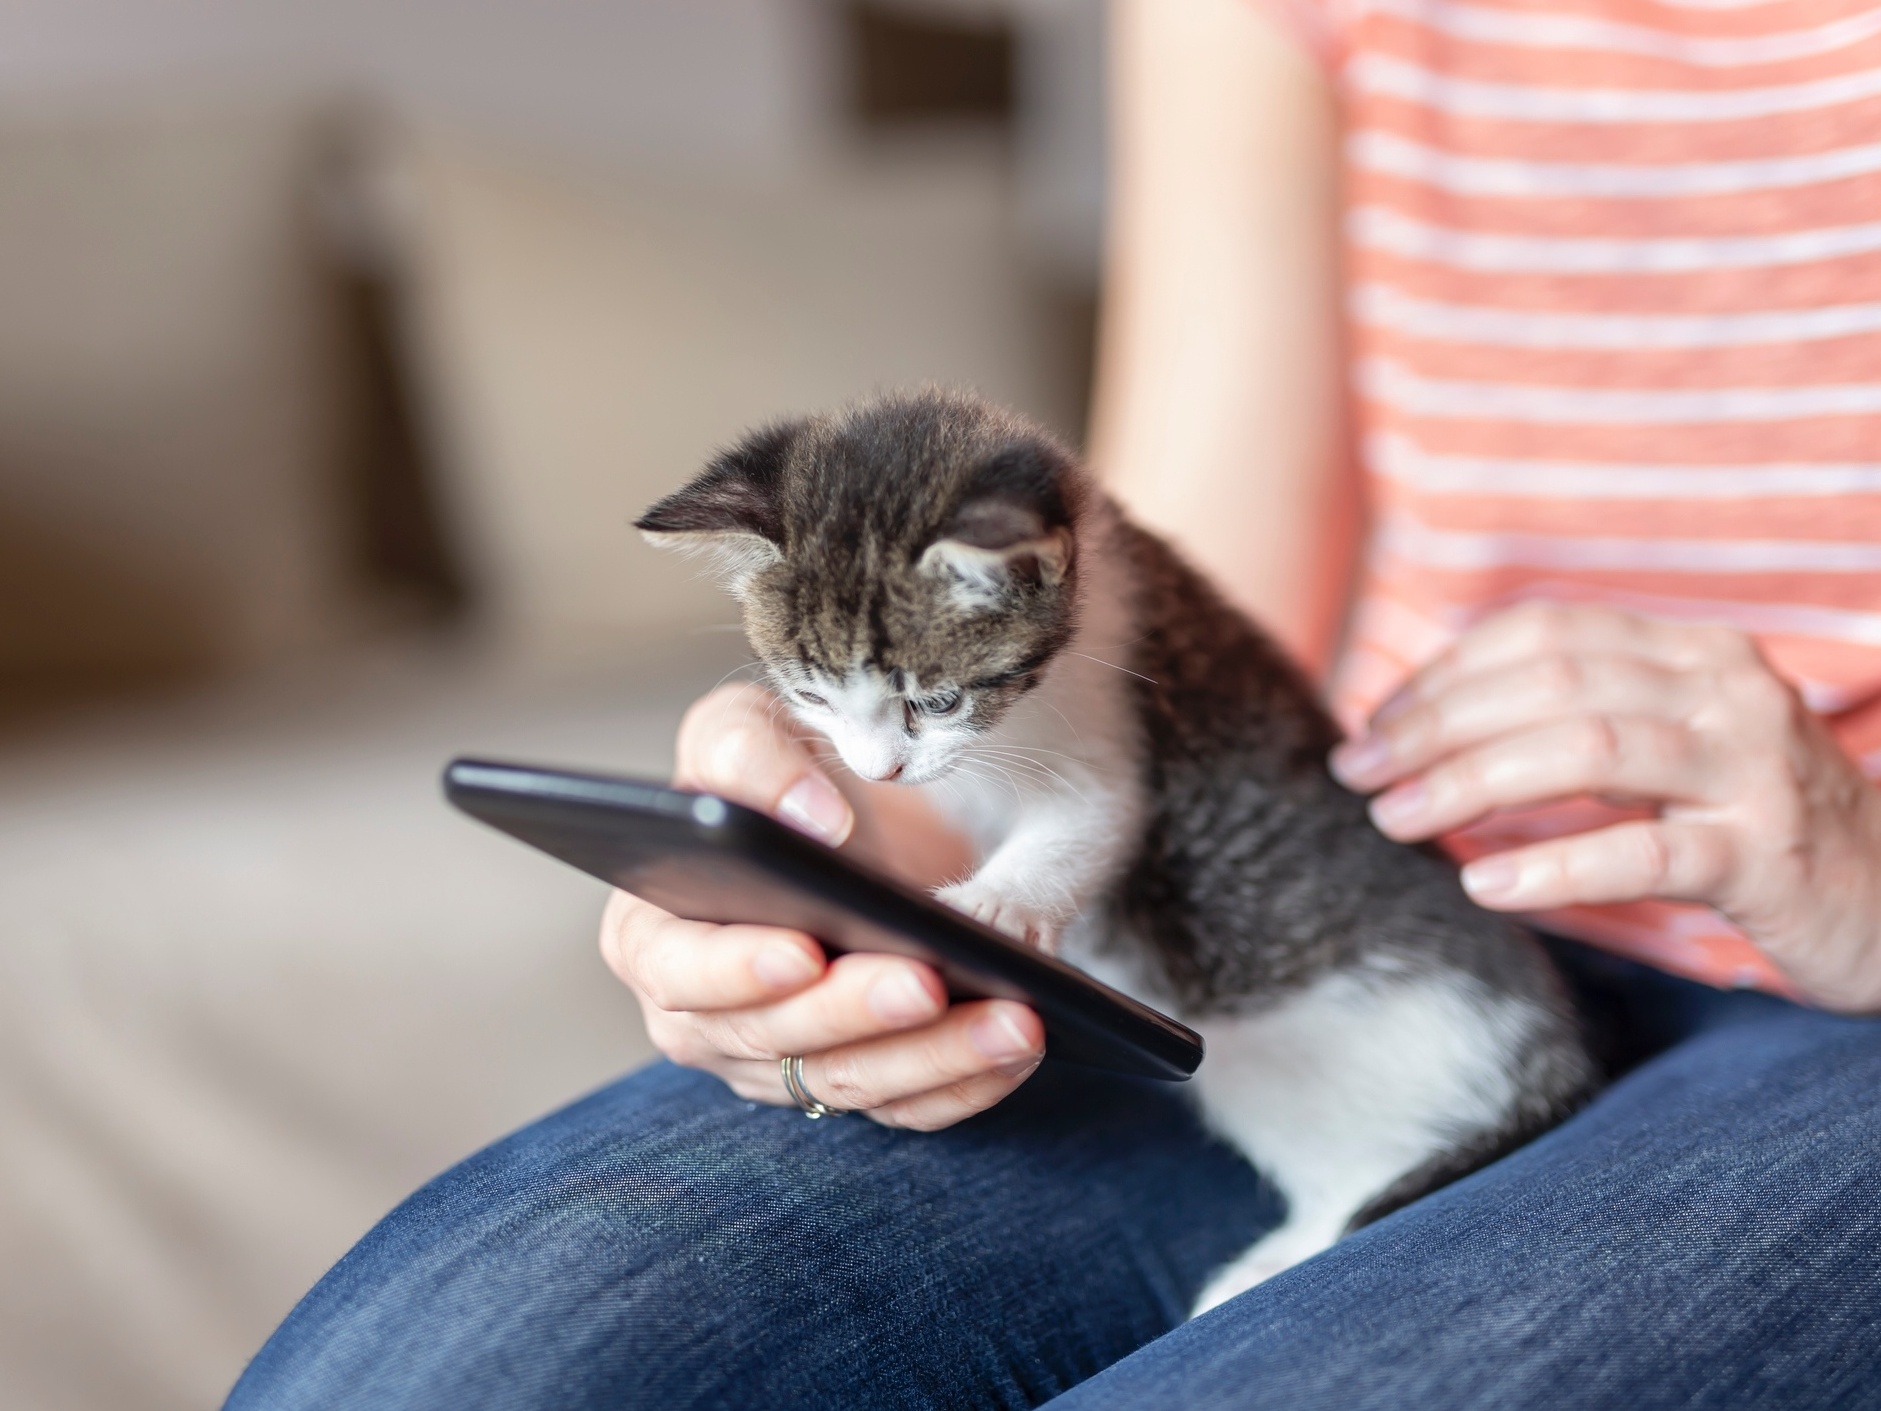 Google esconde jogo de adotar gatos no Android 11; veja como